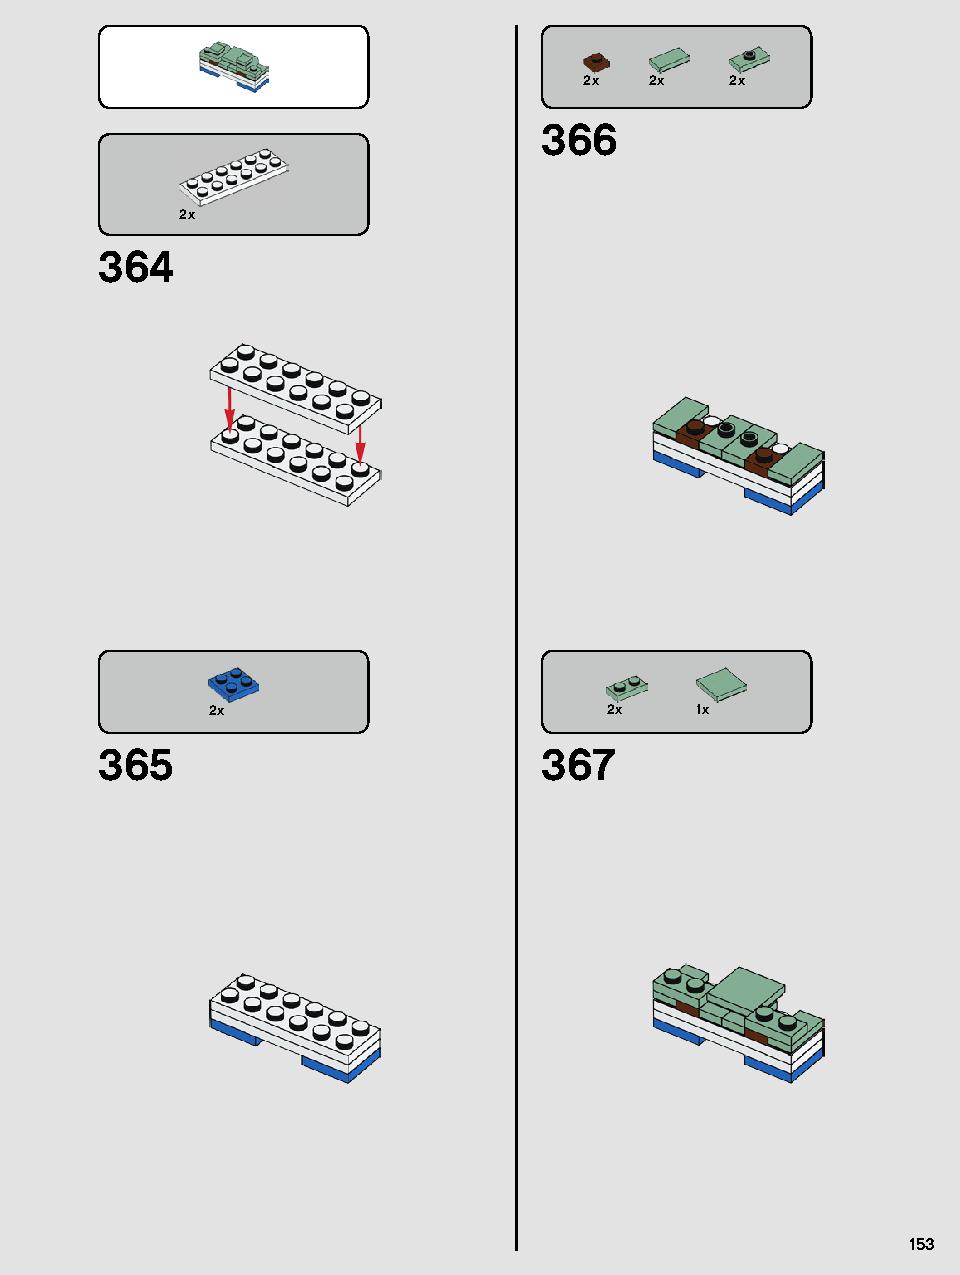 ヨーダ™ 75255 レゴの商品情報 レゴの説明書・組立方法 153 page